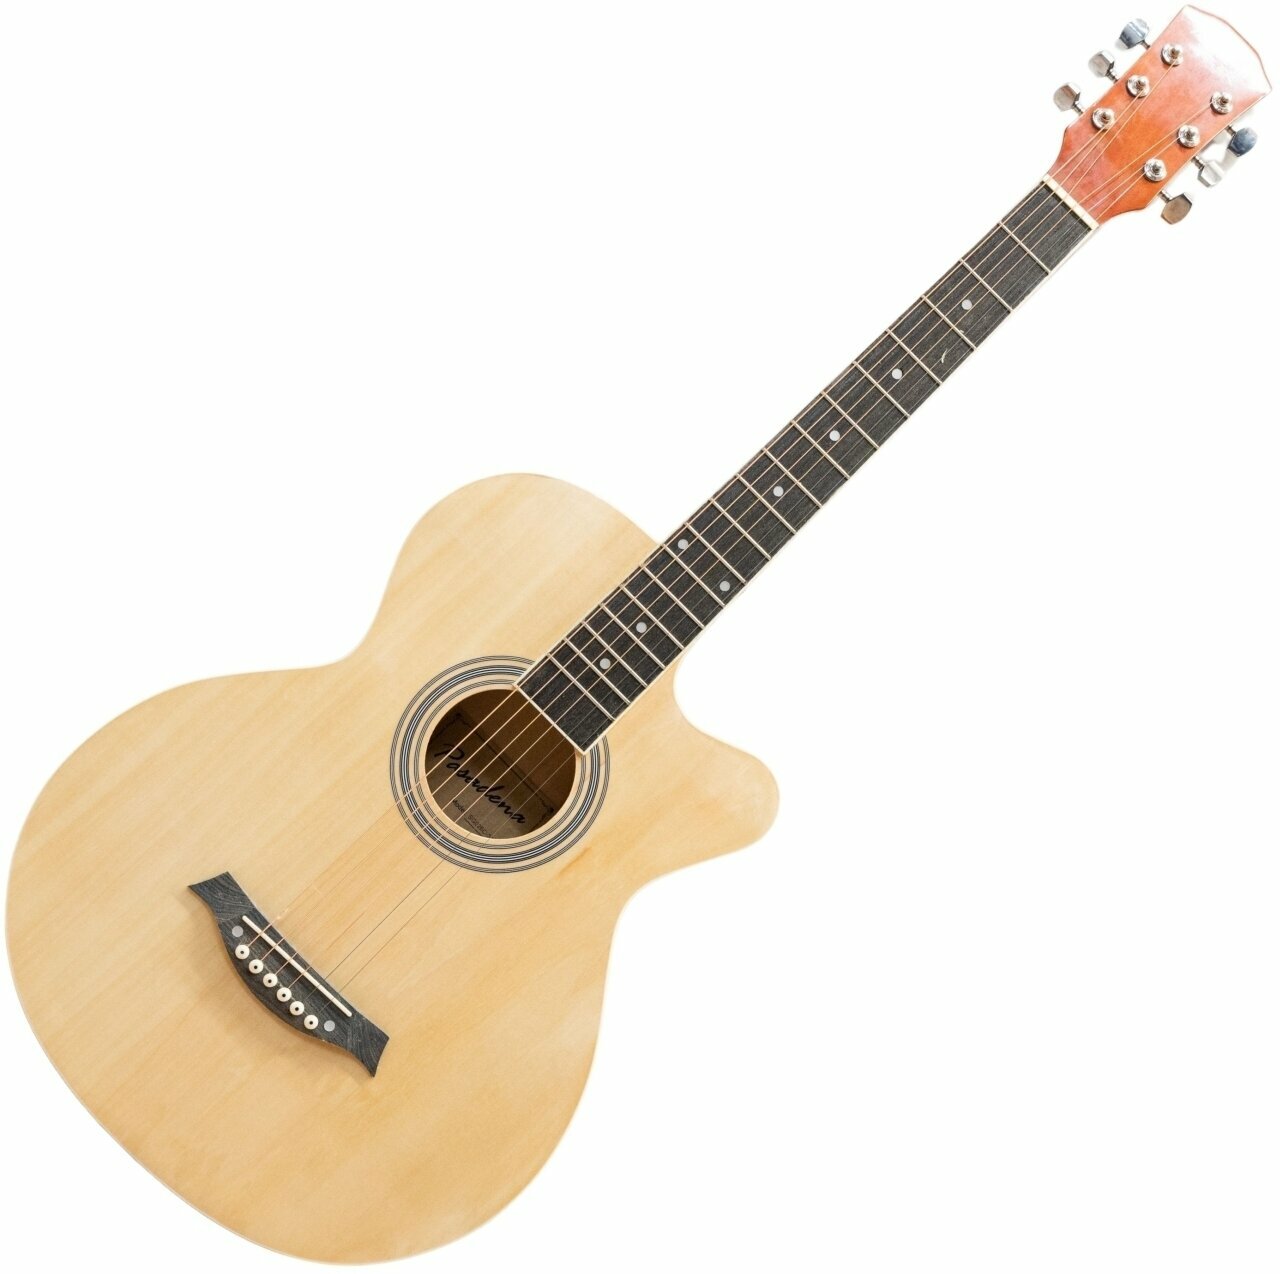 Jumbo akoestische gitaar Pasadena SG026C Natural